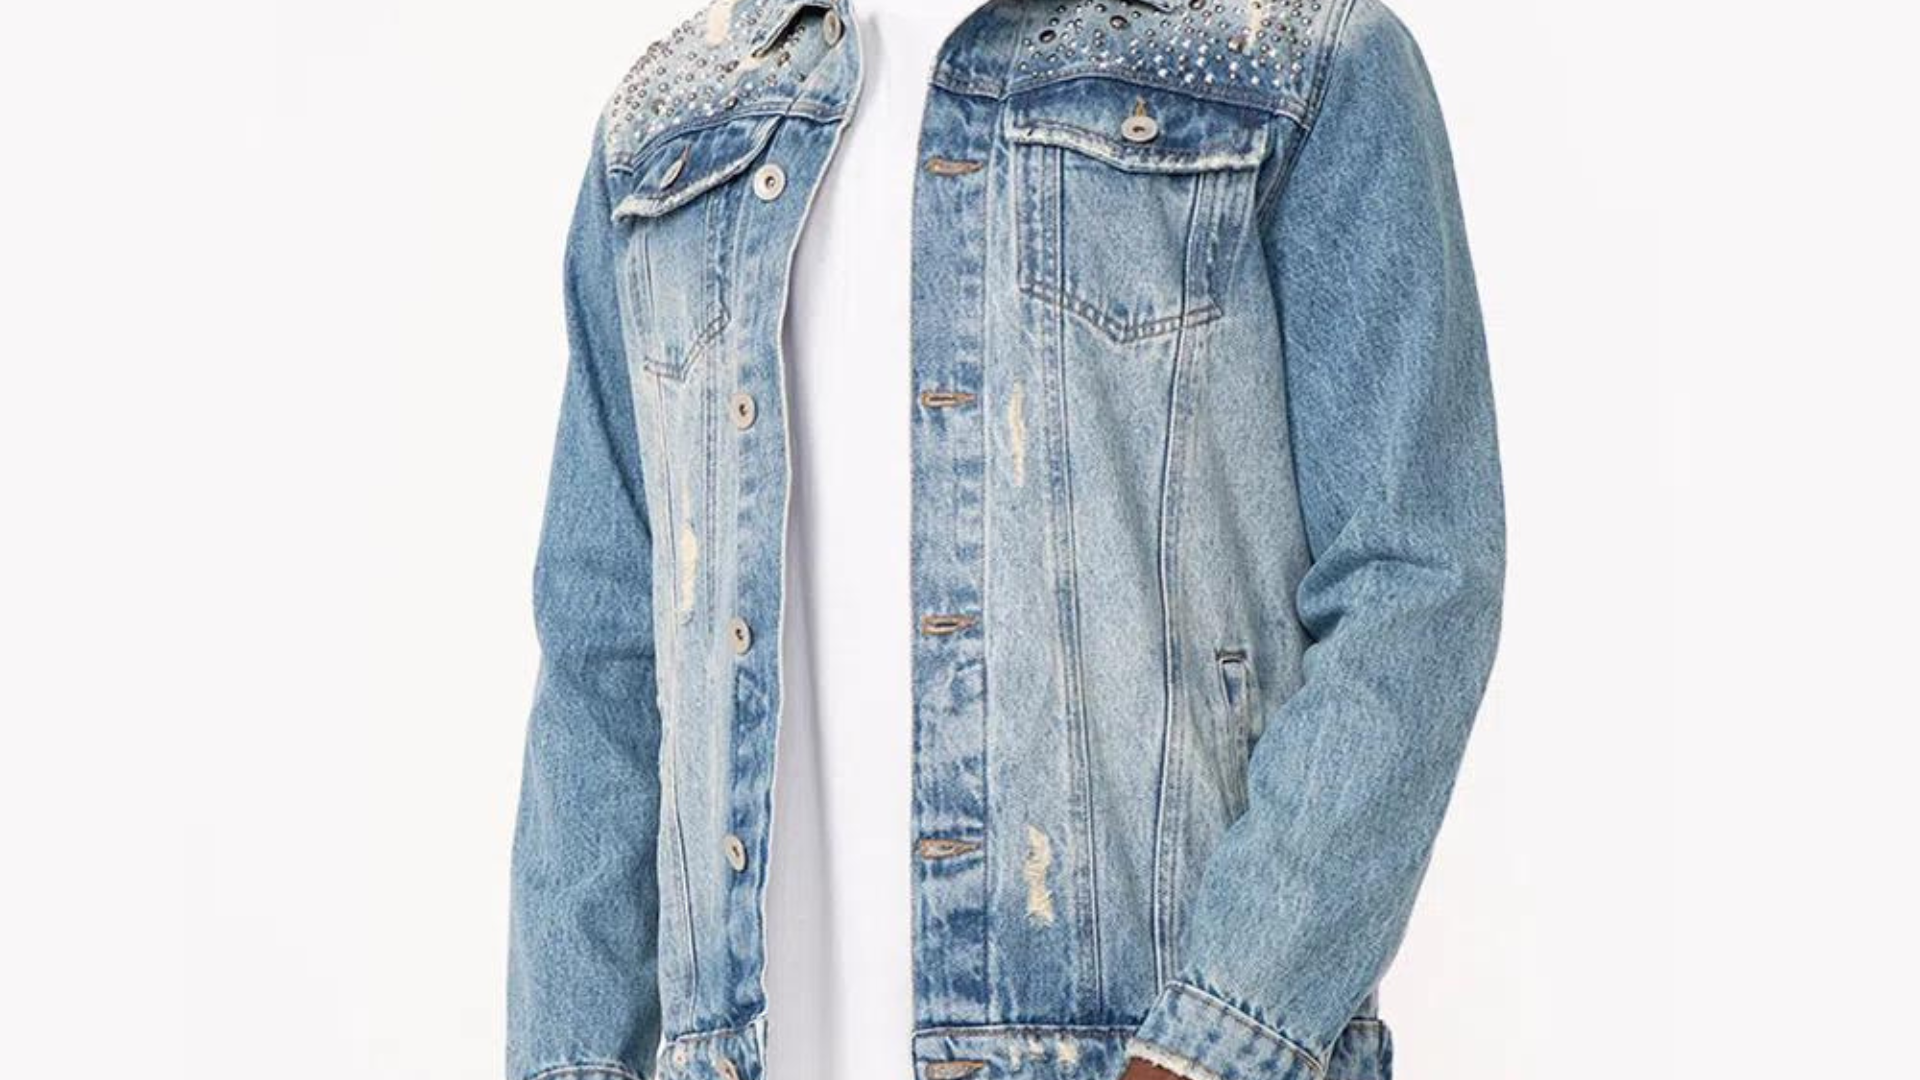 C&A oferece desconto de 10% na nova coleção jeans em troca de peças usadas